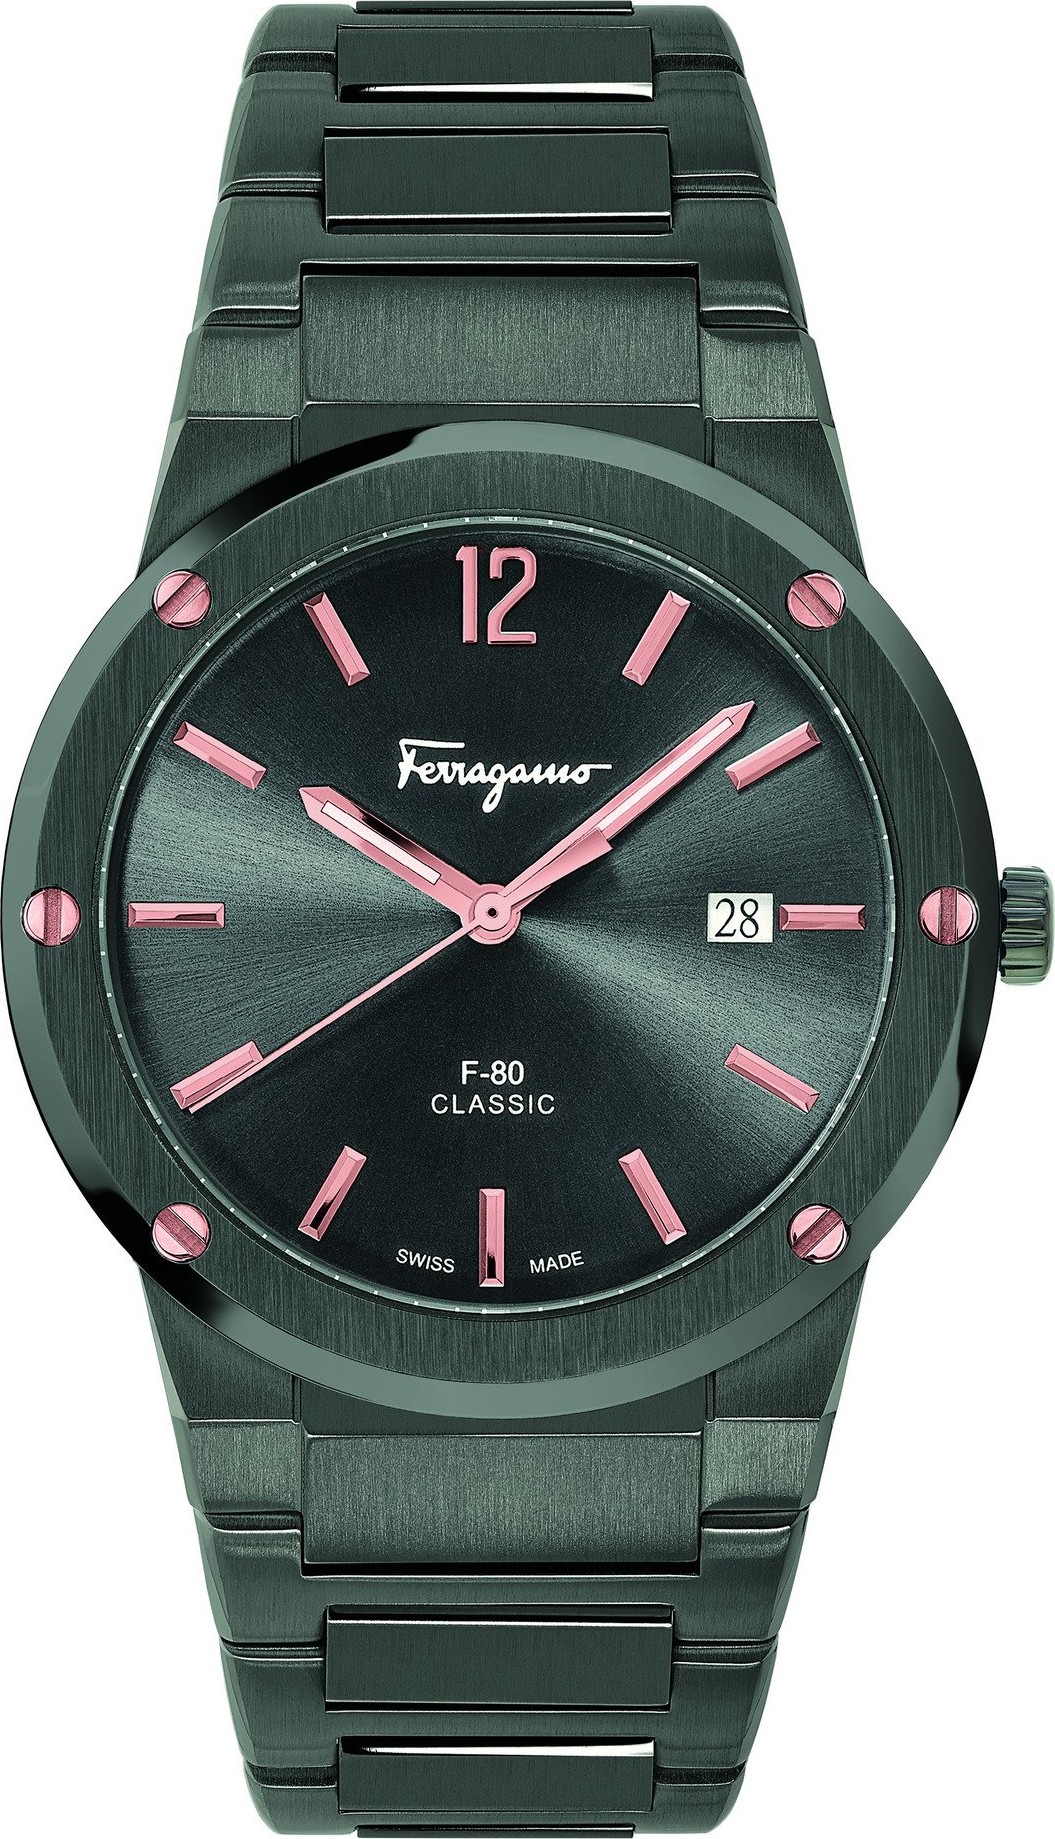 Salvatore Ferragamo sfdt01520 F-80 Watch 41mm